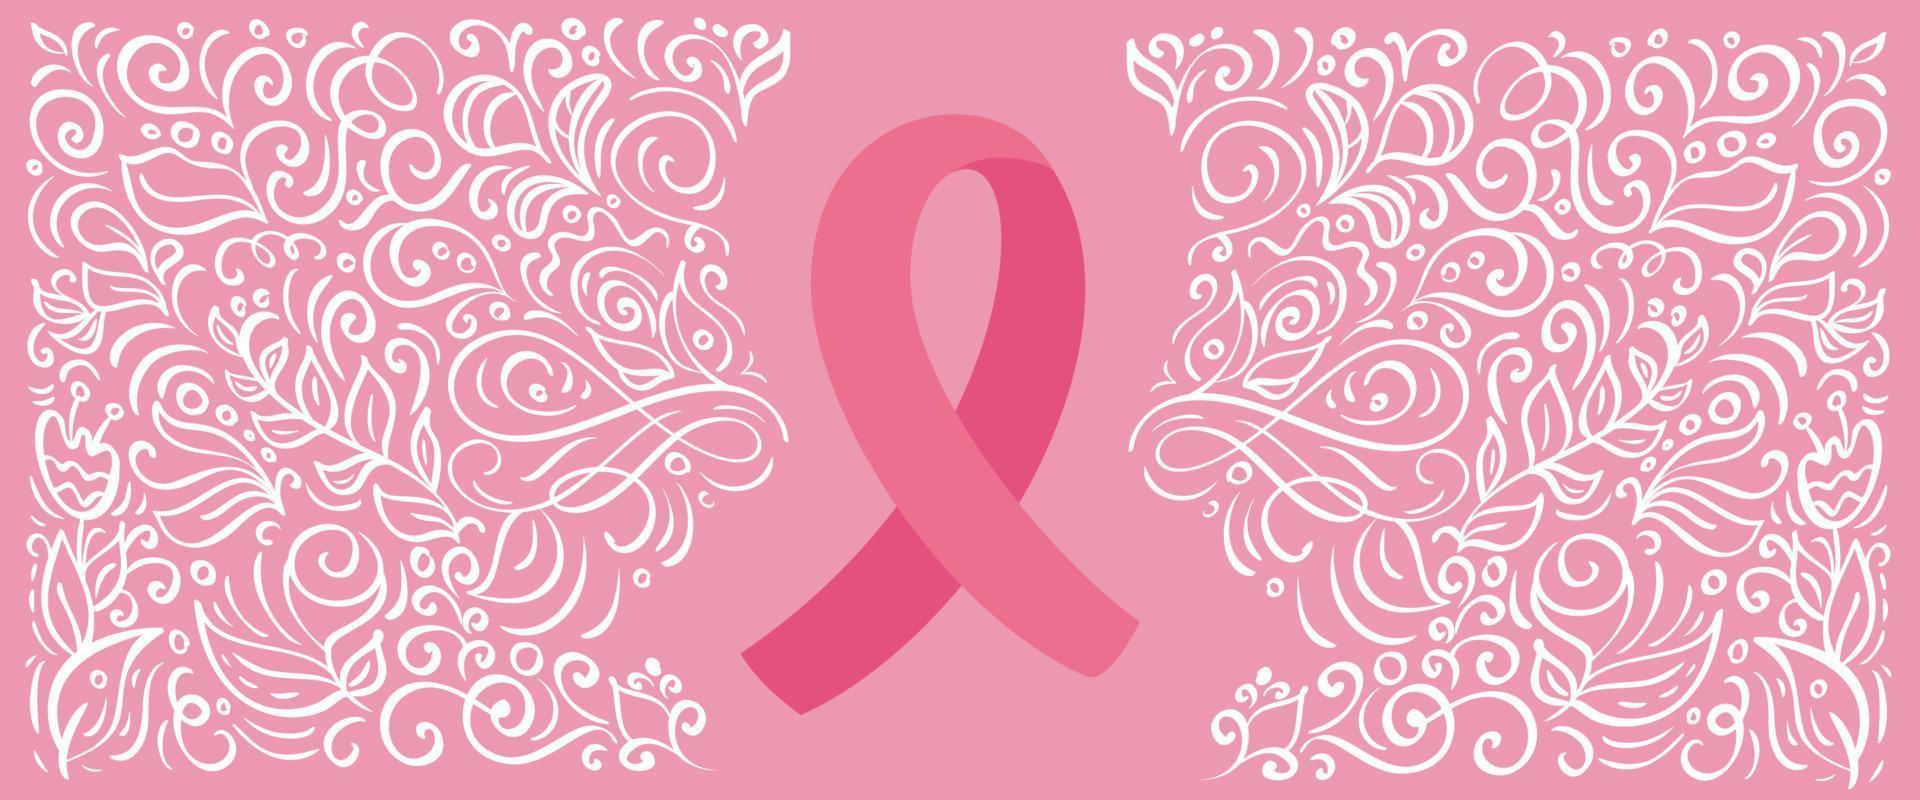 il nastro di banner vettoriale rosa stilizzato del contenitore per il seno per ottobre è il mese della consapevolezza del cancro. illustrazione di calligrafia su sfondo rosa fiorire